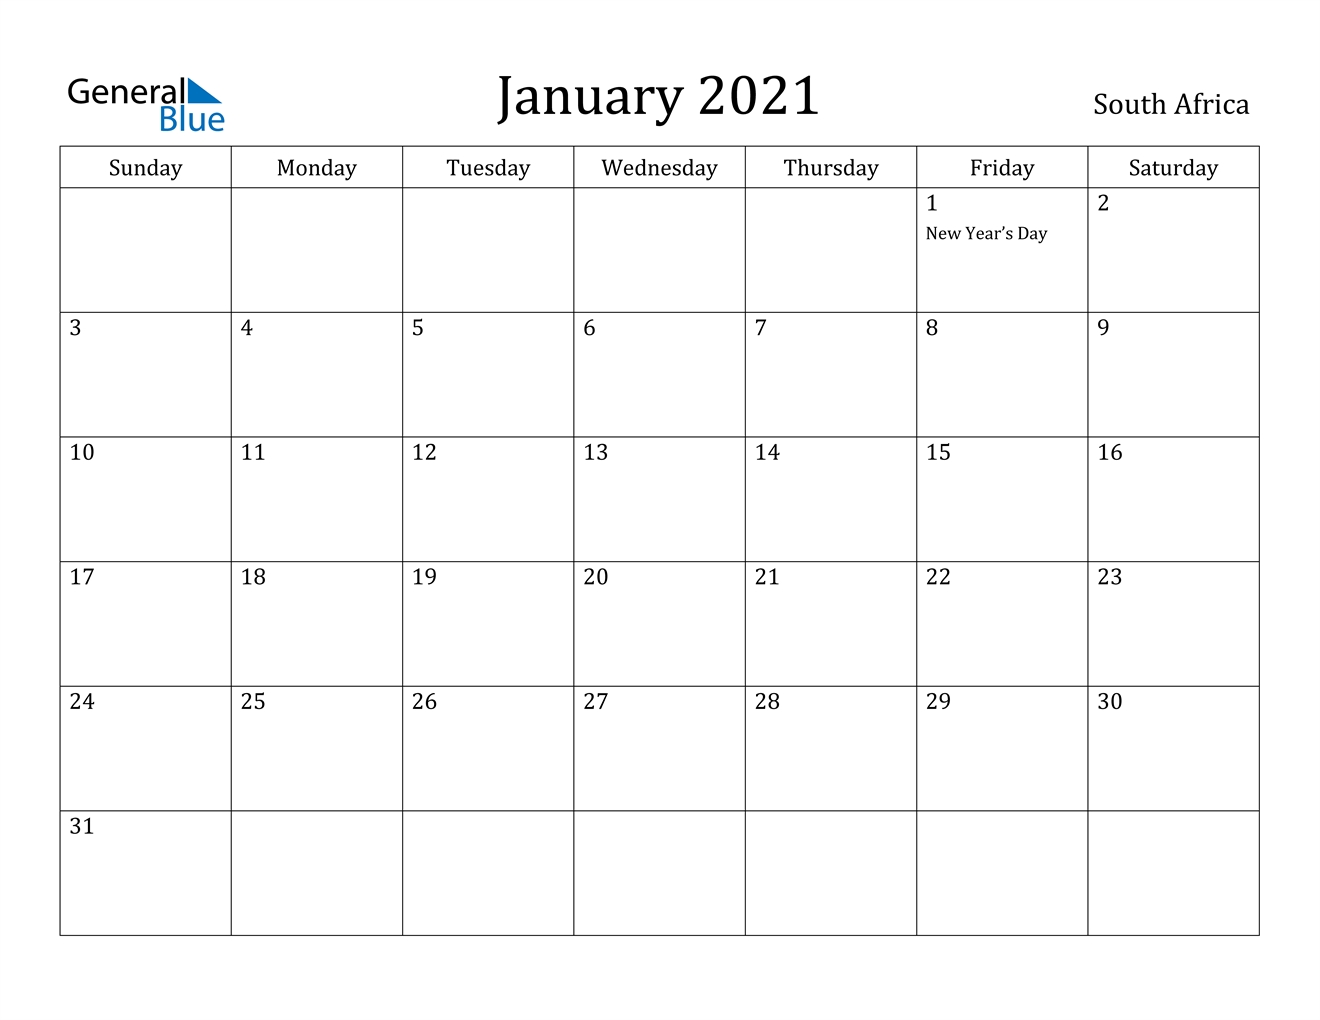 January 2021 Calendar - South Africa-2021 Calendar With Holidays Sa